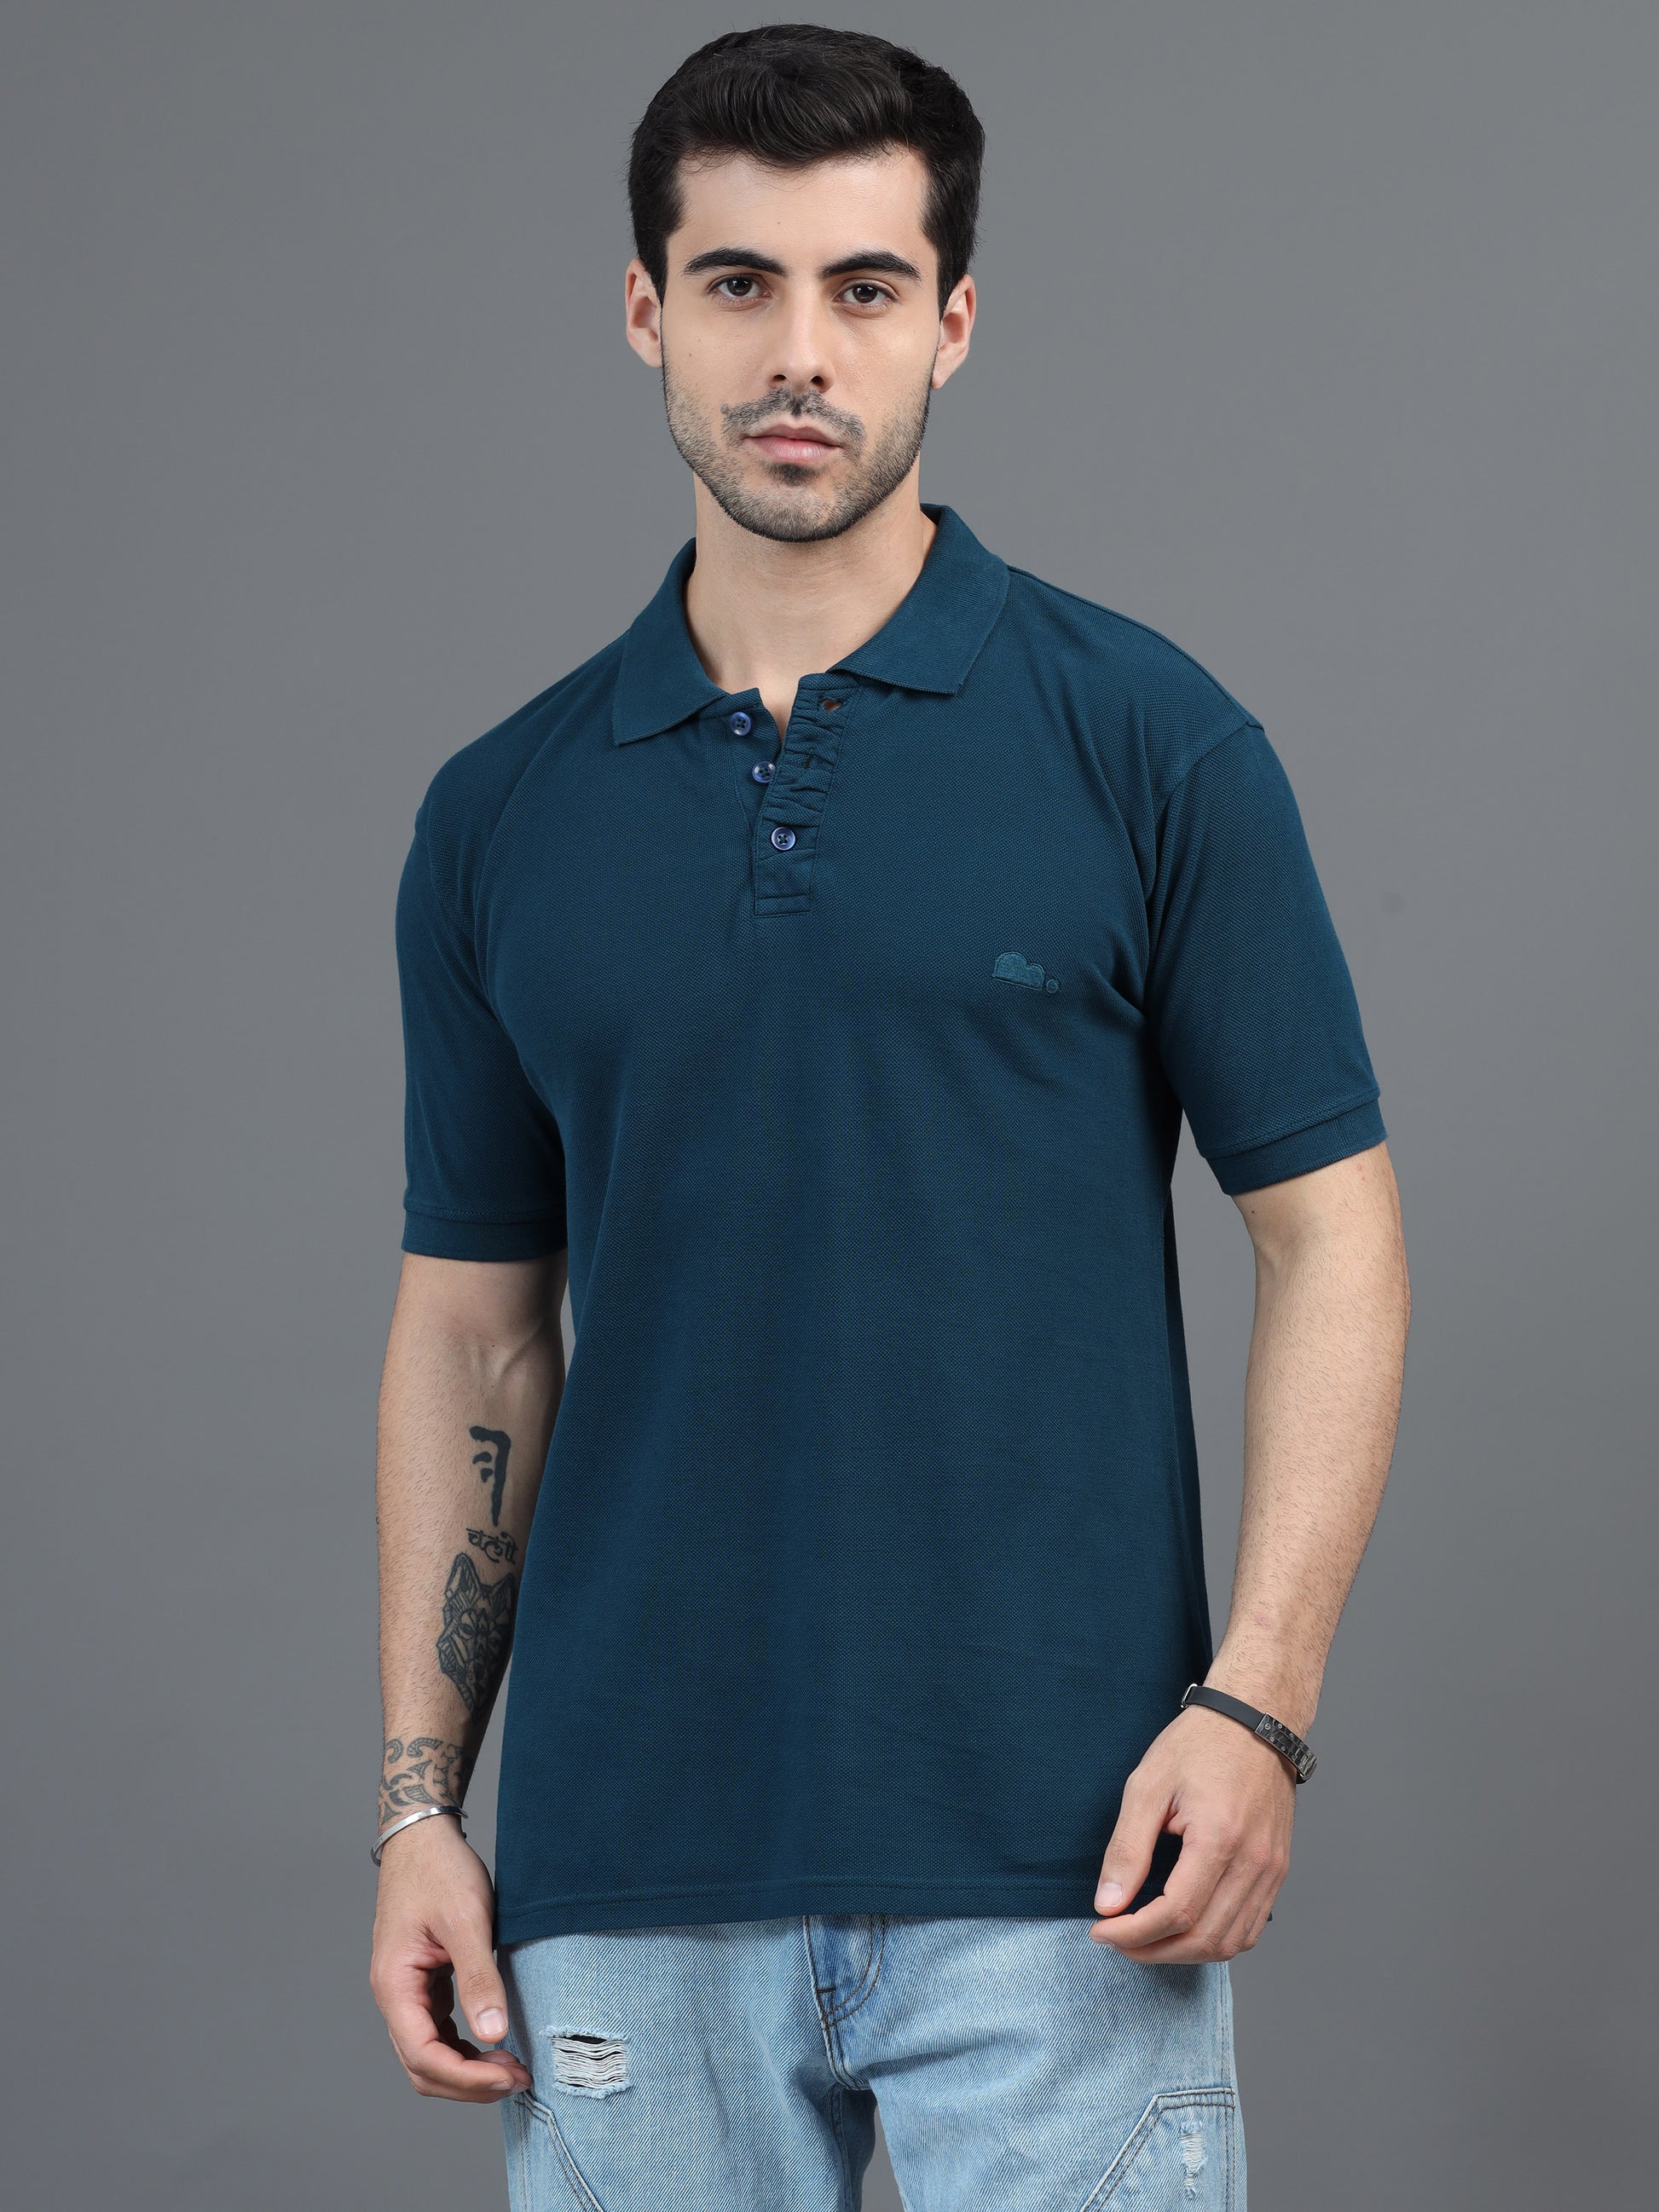 Blue T Shirt for Men